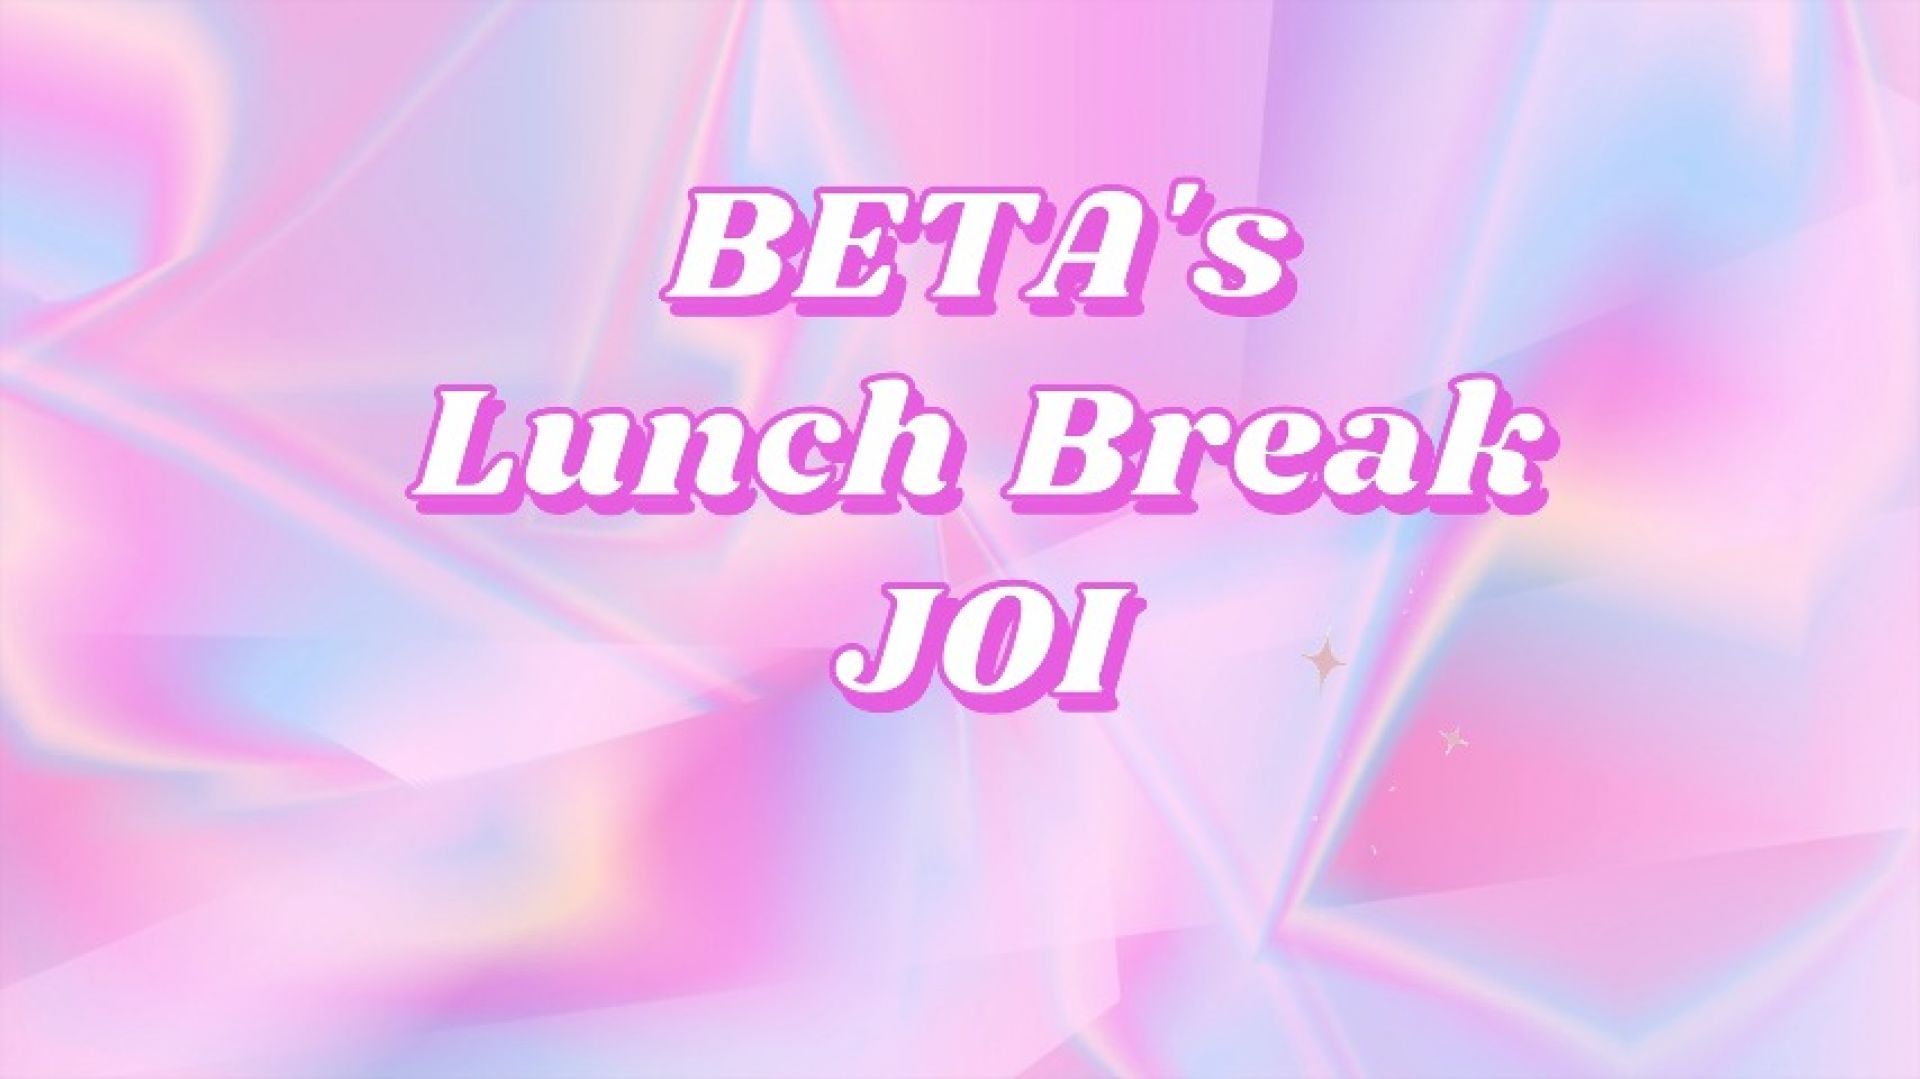 beta's Lunch Break JOI